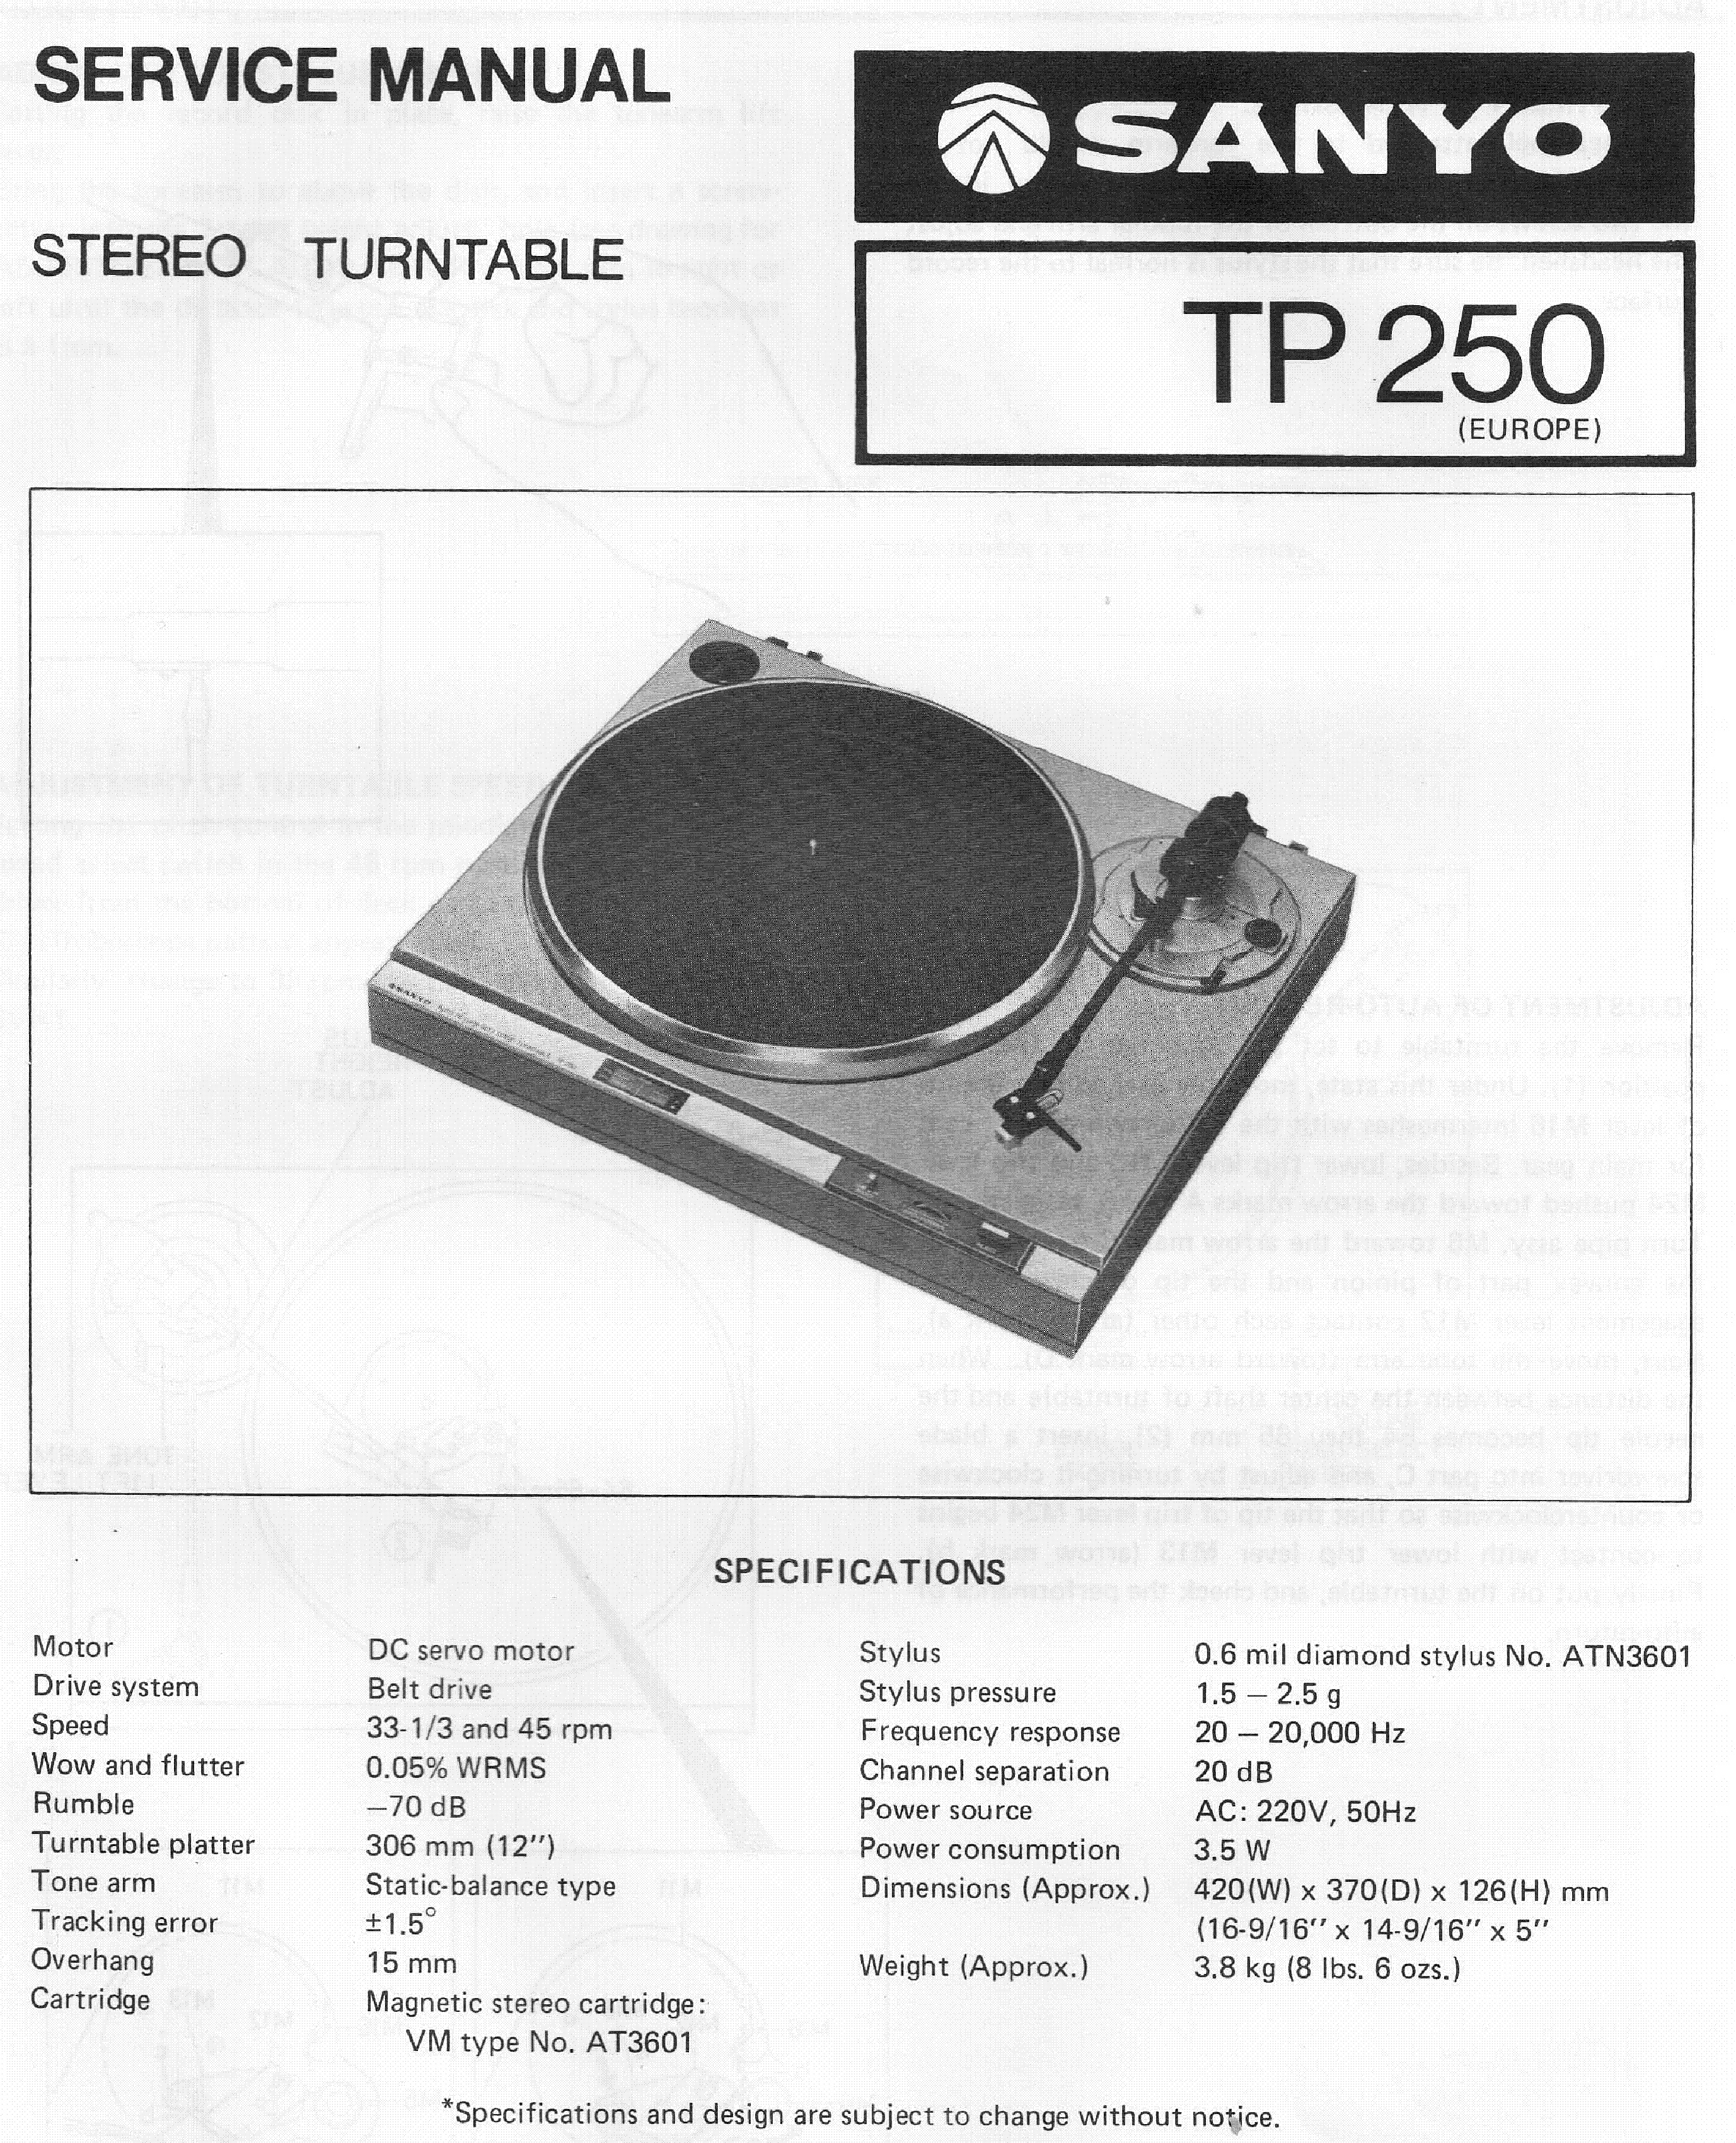 Sanyo TP-250-Daten-1984.jpg